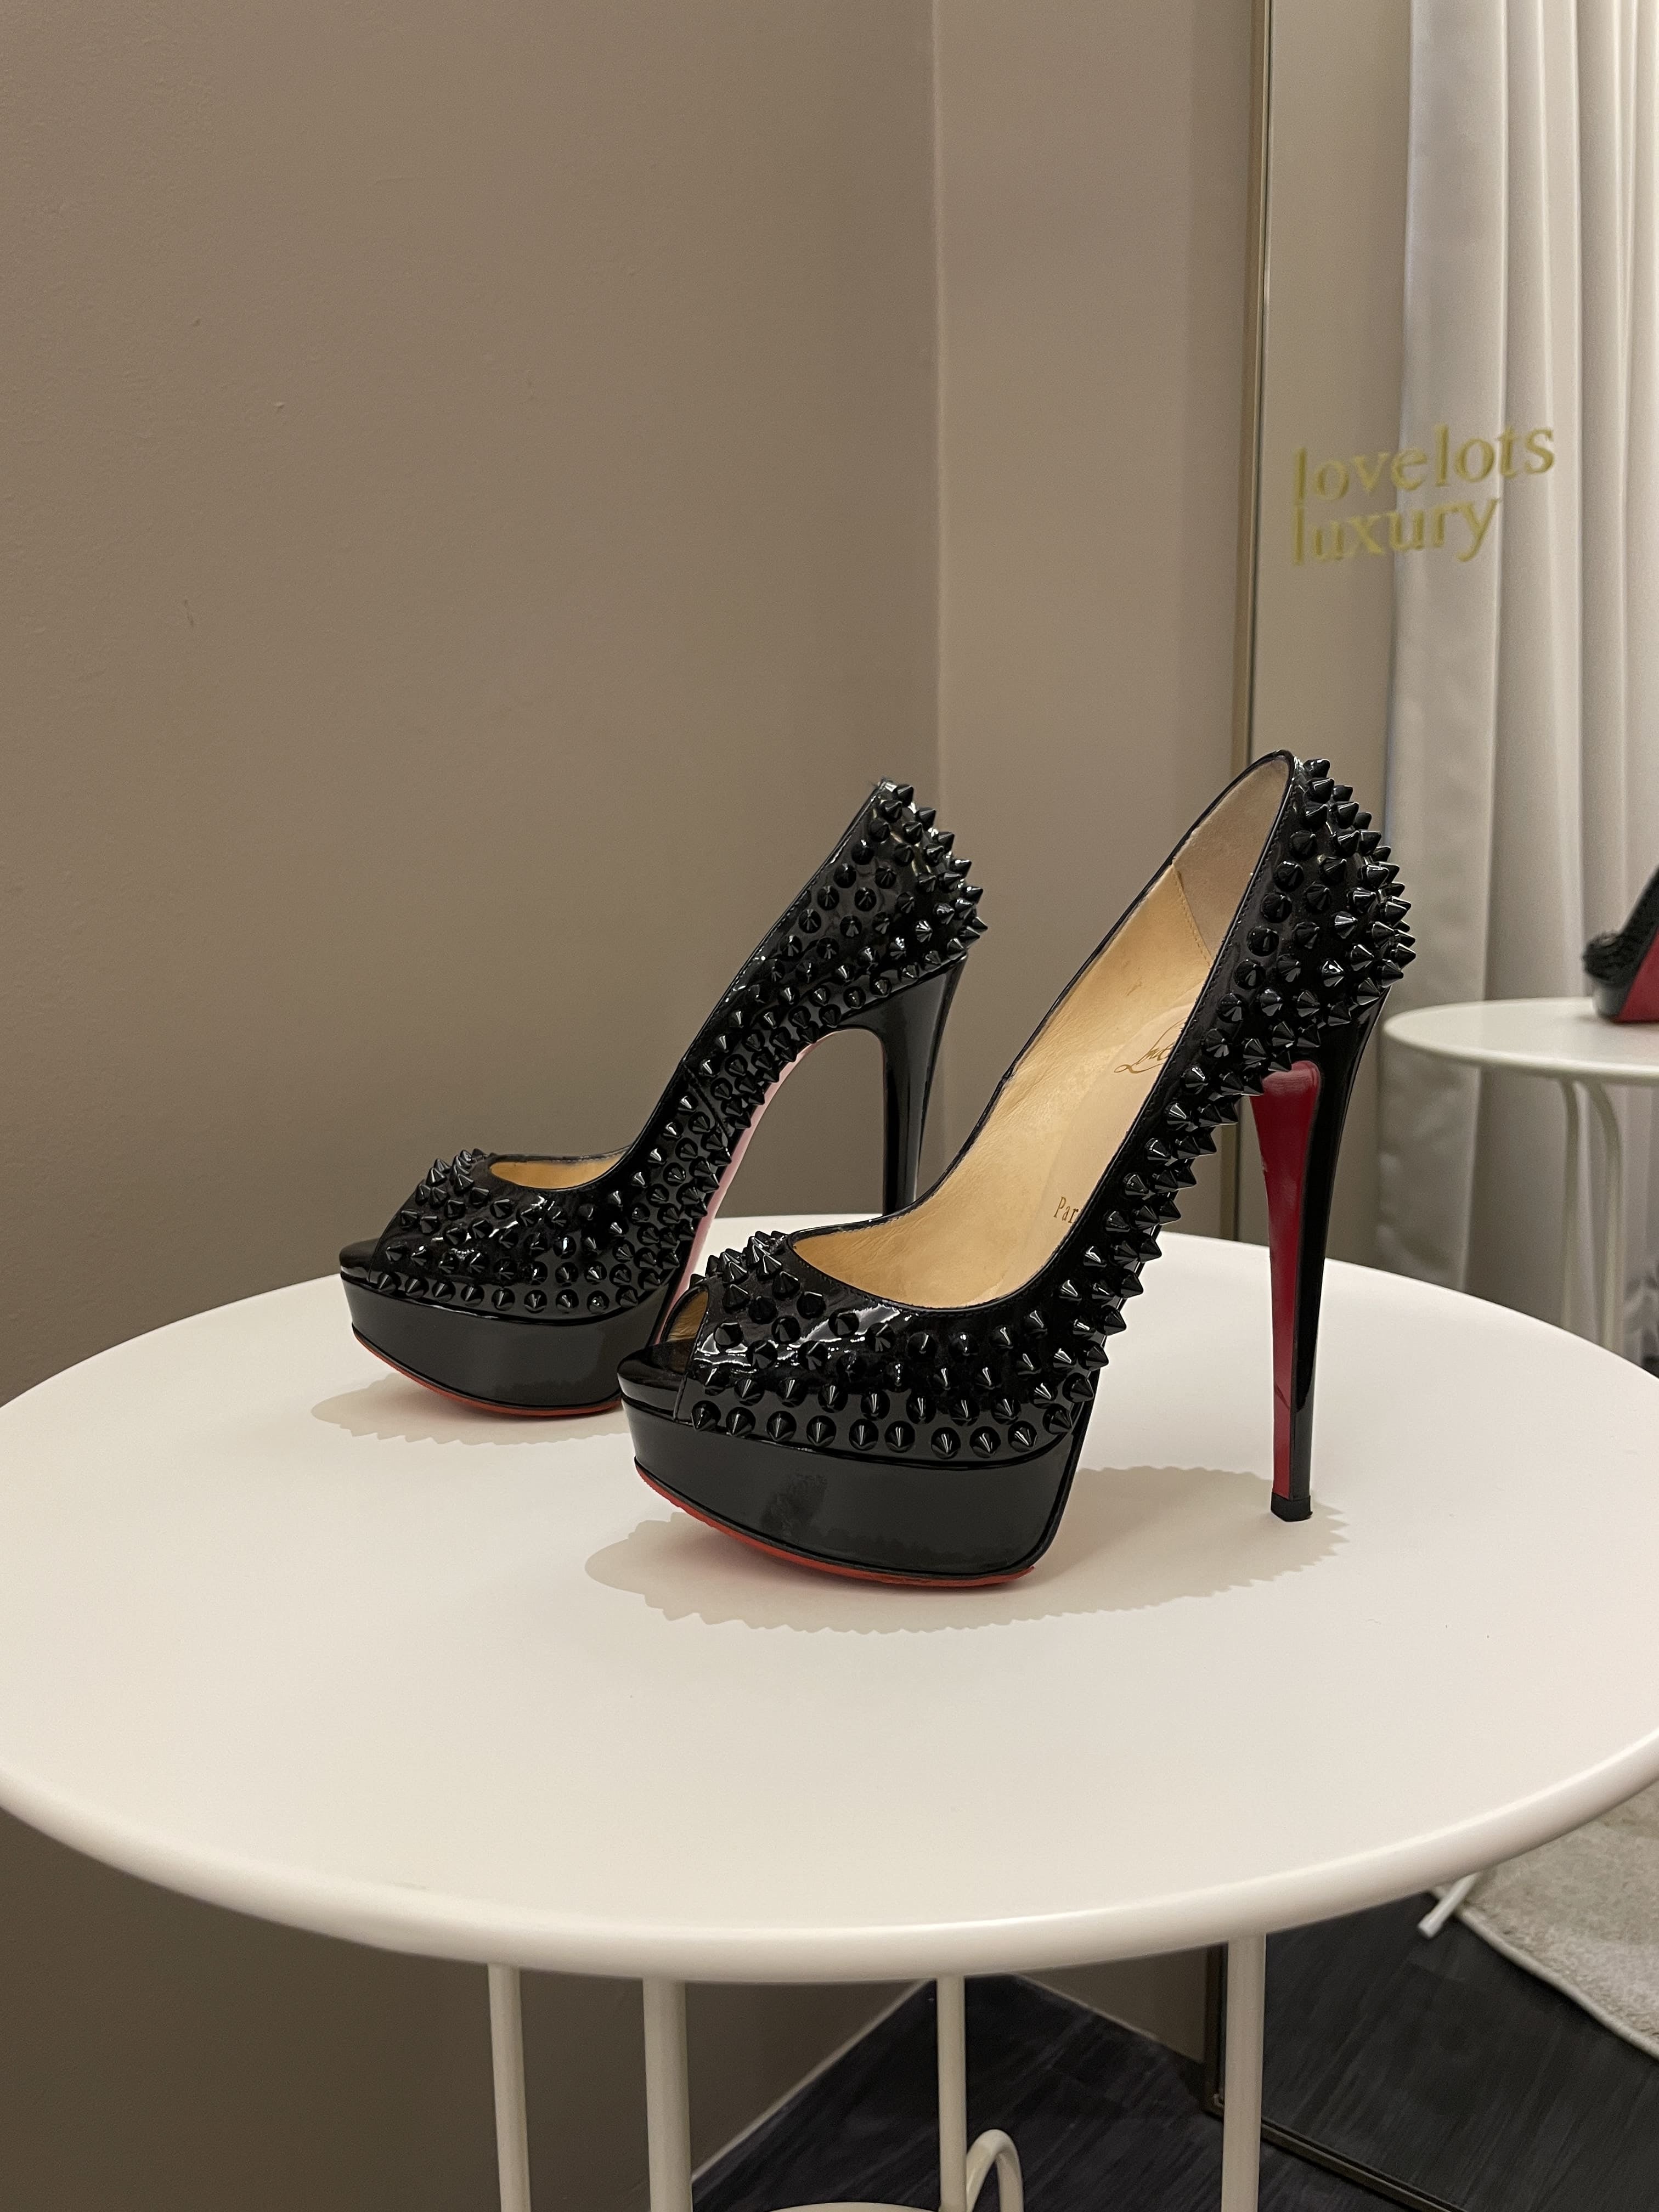 Christine Louboutin Spike Heels 130 Black Size 35.5 – ＬＯＶＥＬＯＴＳＬＵＸＵＲＹ